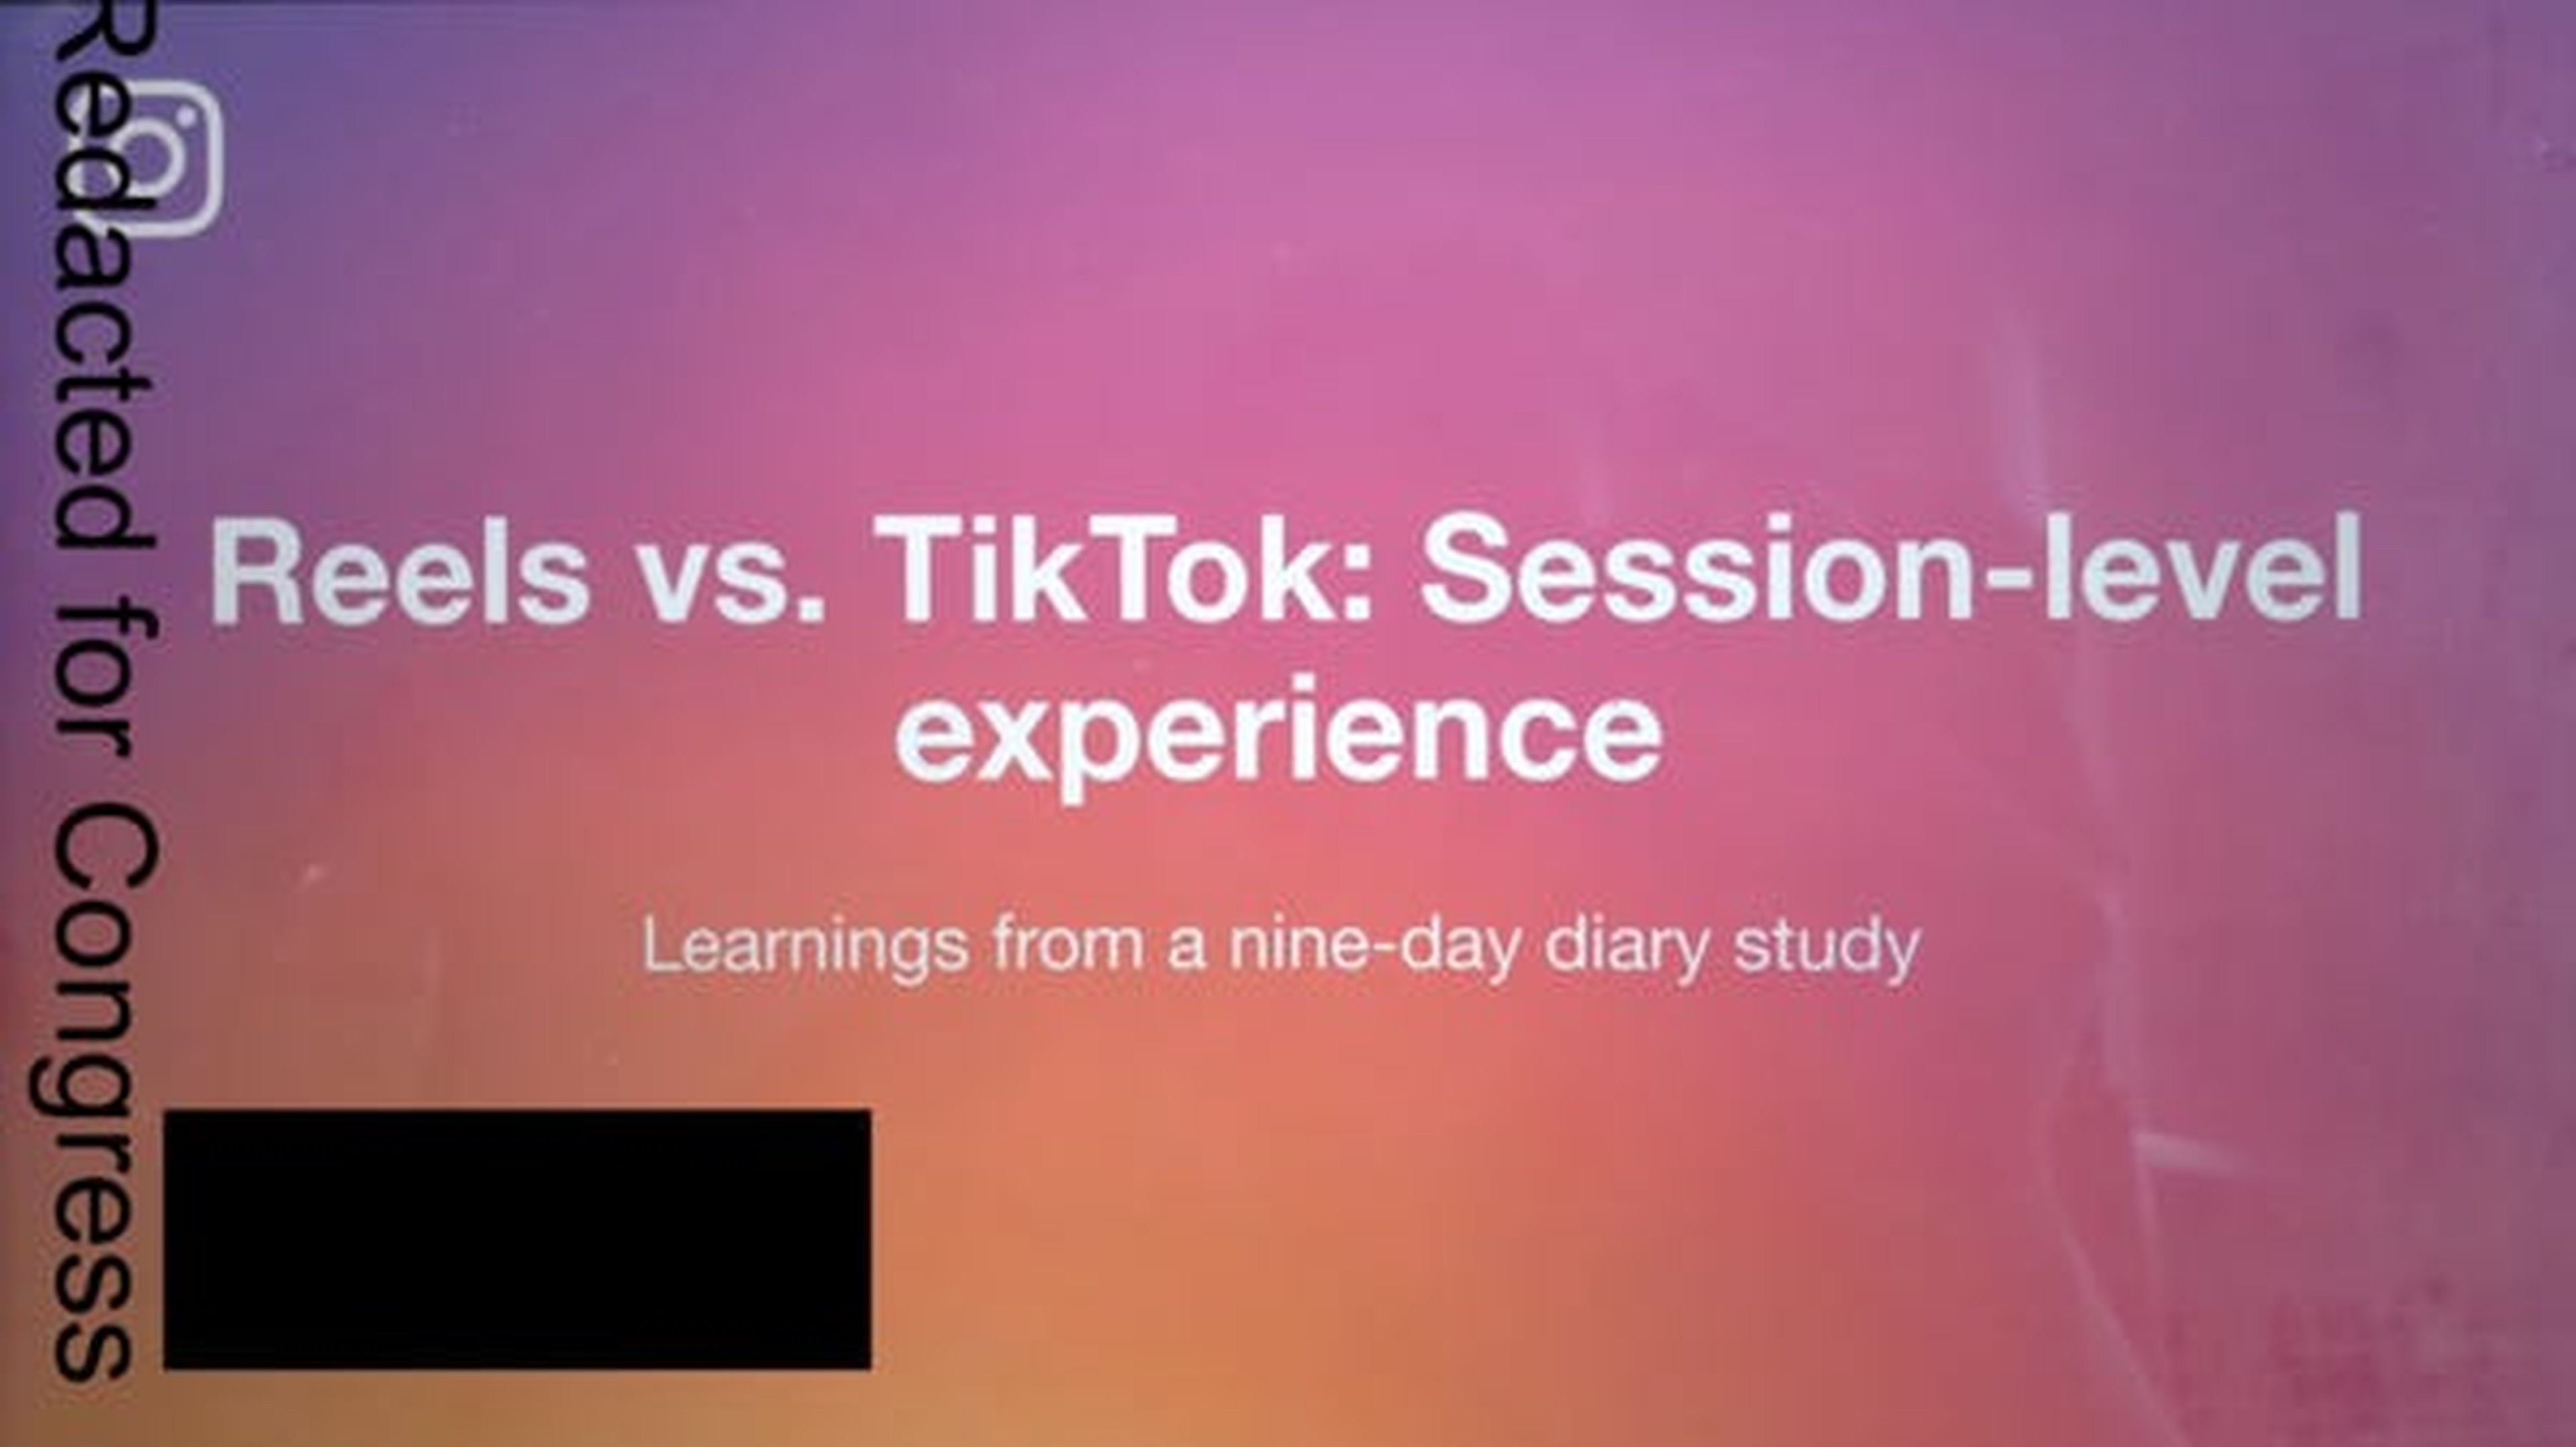 Los documentos presentados por Frances Haugen incluyen una copia de un estudio interno titulado: "Reels vs. TikTok: Experiencia a nivel de sesión".